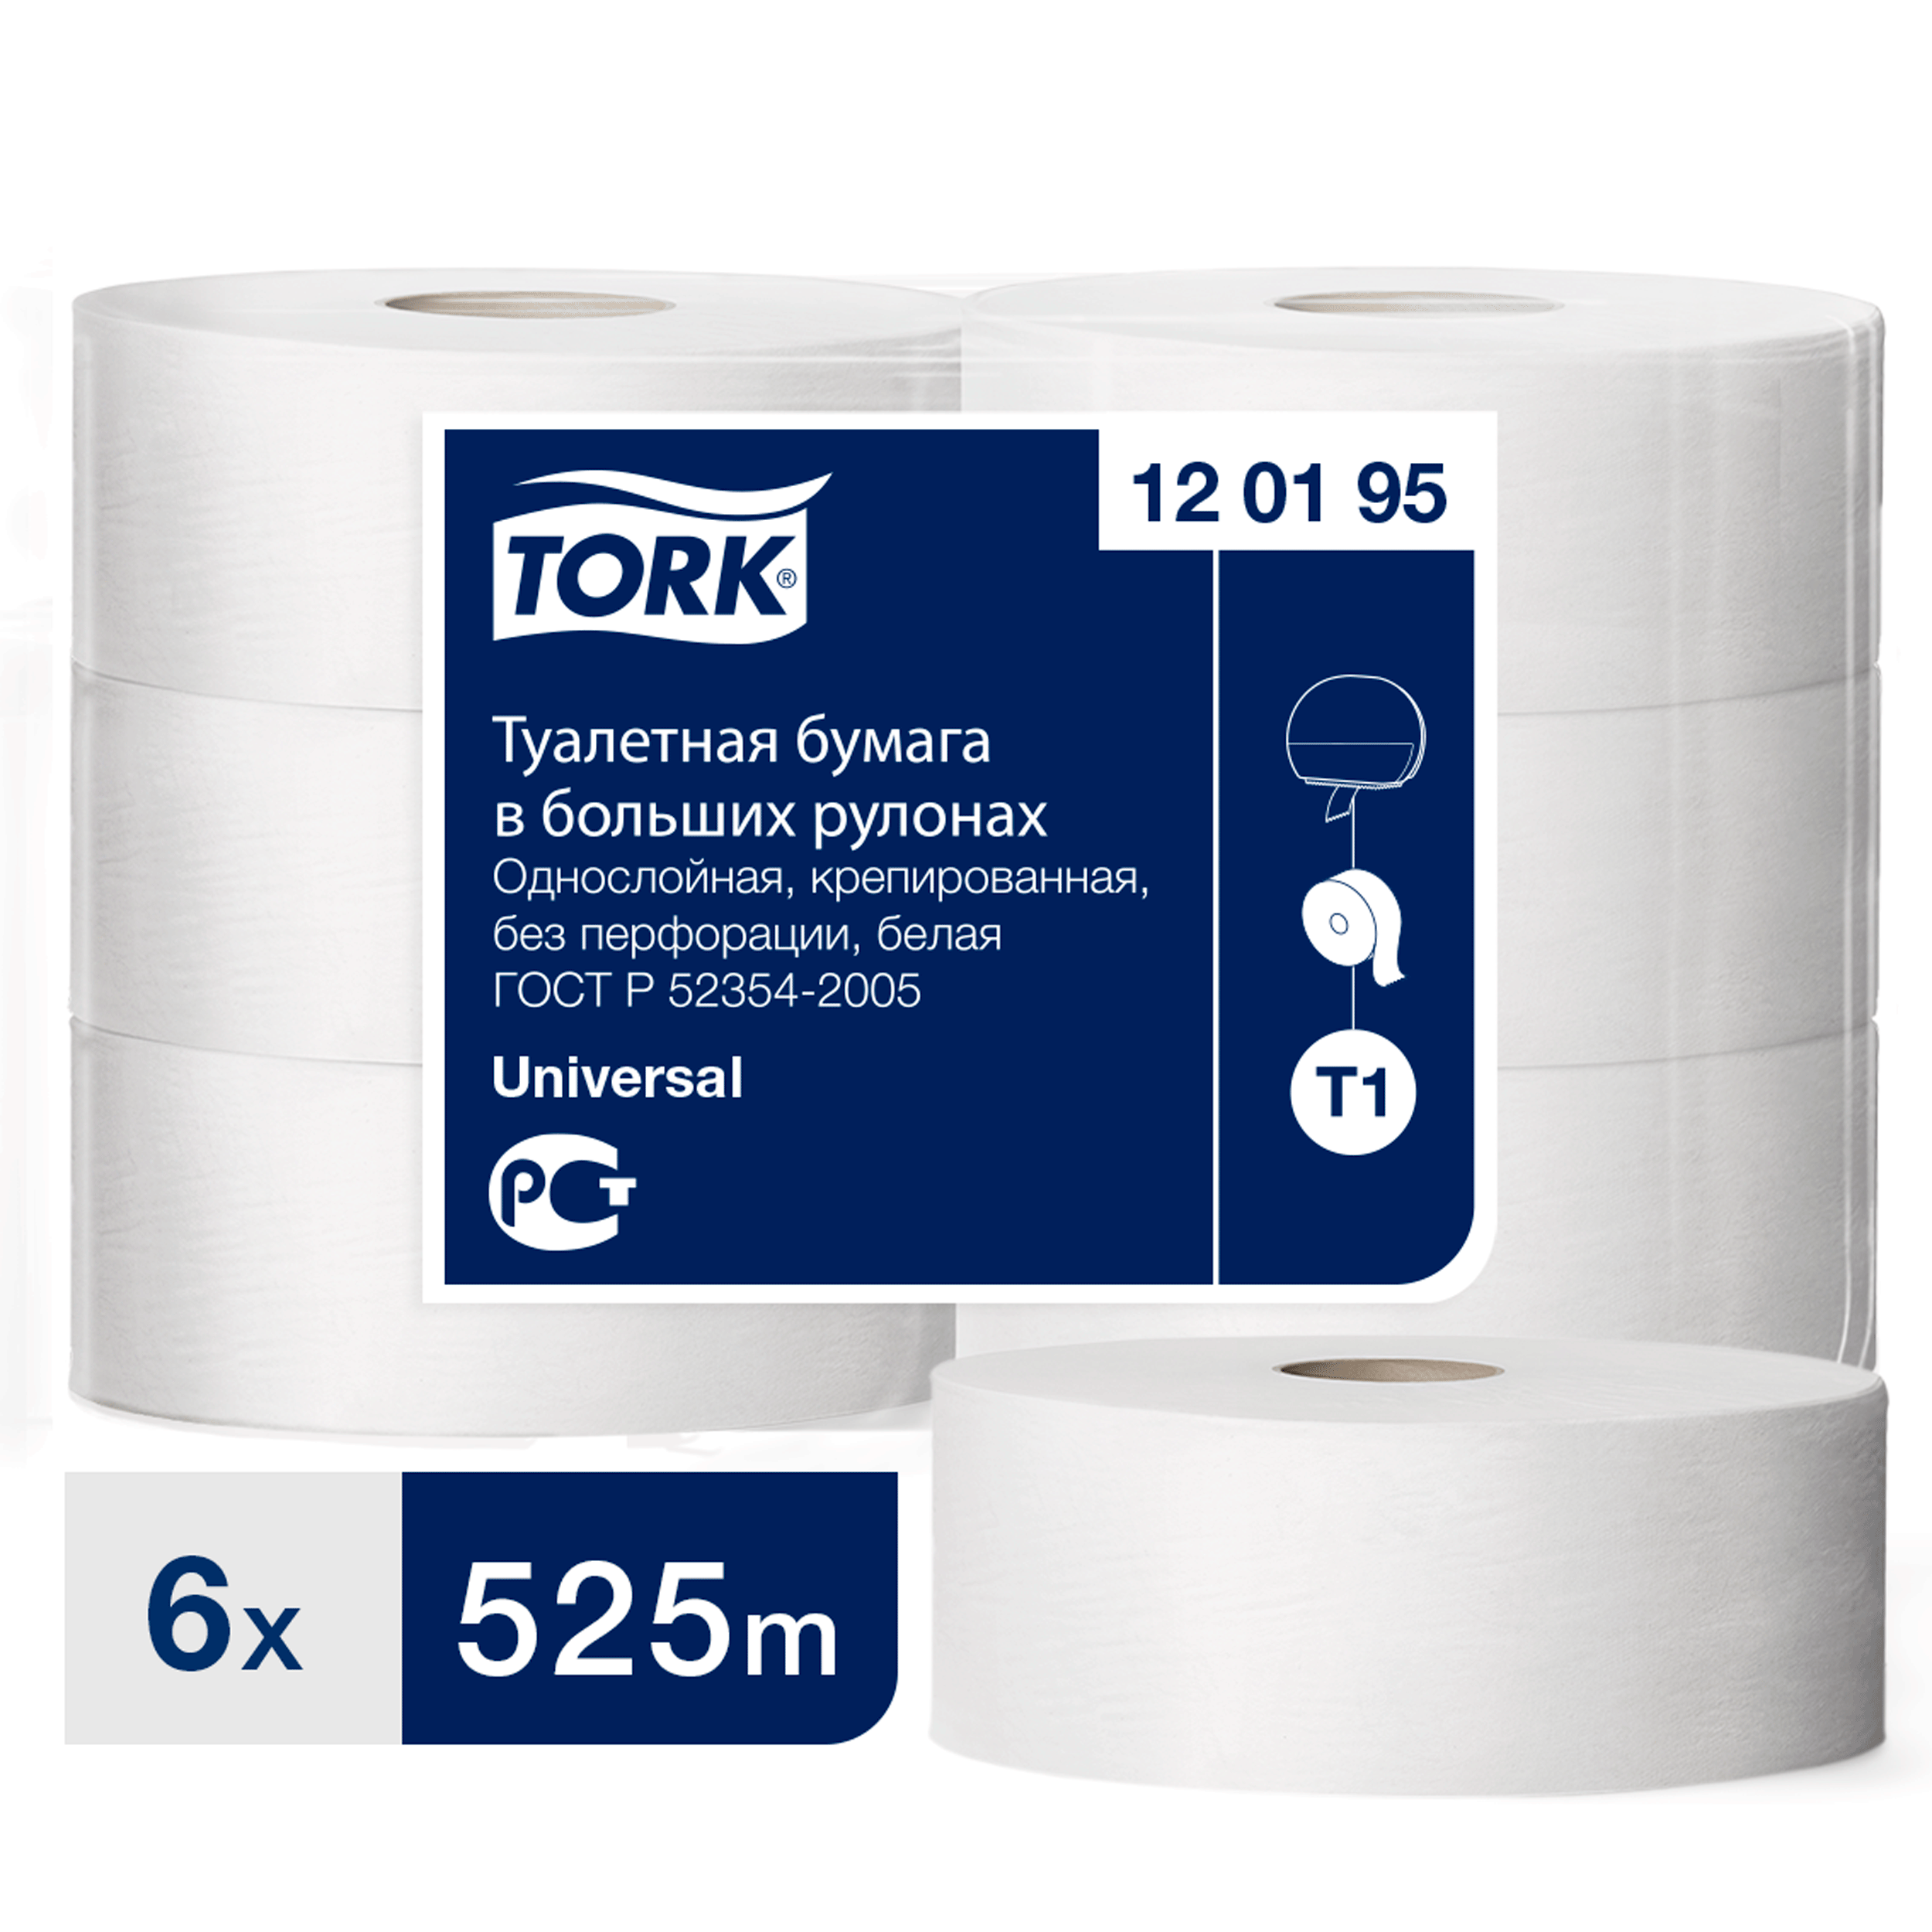 Туалетная бумага Tork в больших рулонах, T1, 1 слой, 525 м, ширина 9,5см, 6 шт бумага туалетная в mid size рулонах tork universal t6 1 слой 135м рулон белая мягкая